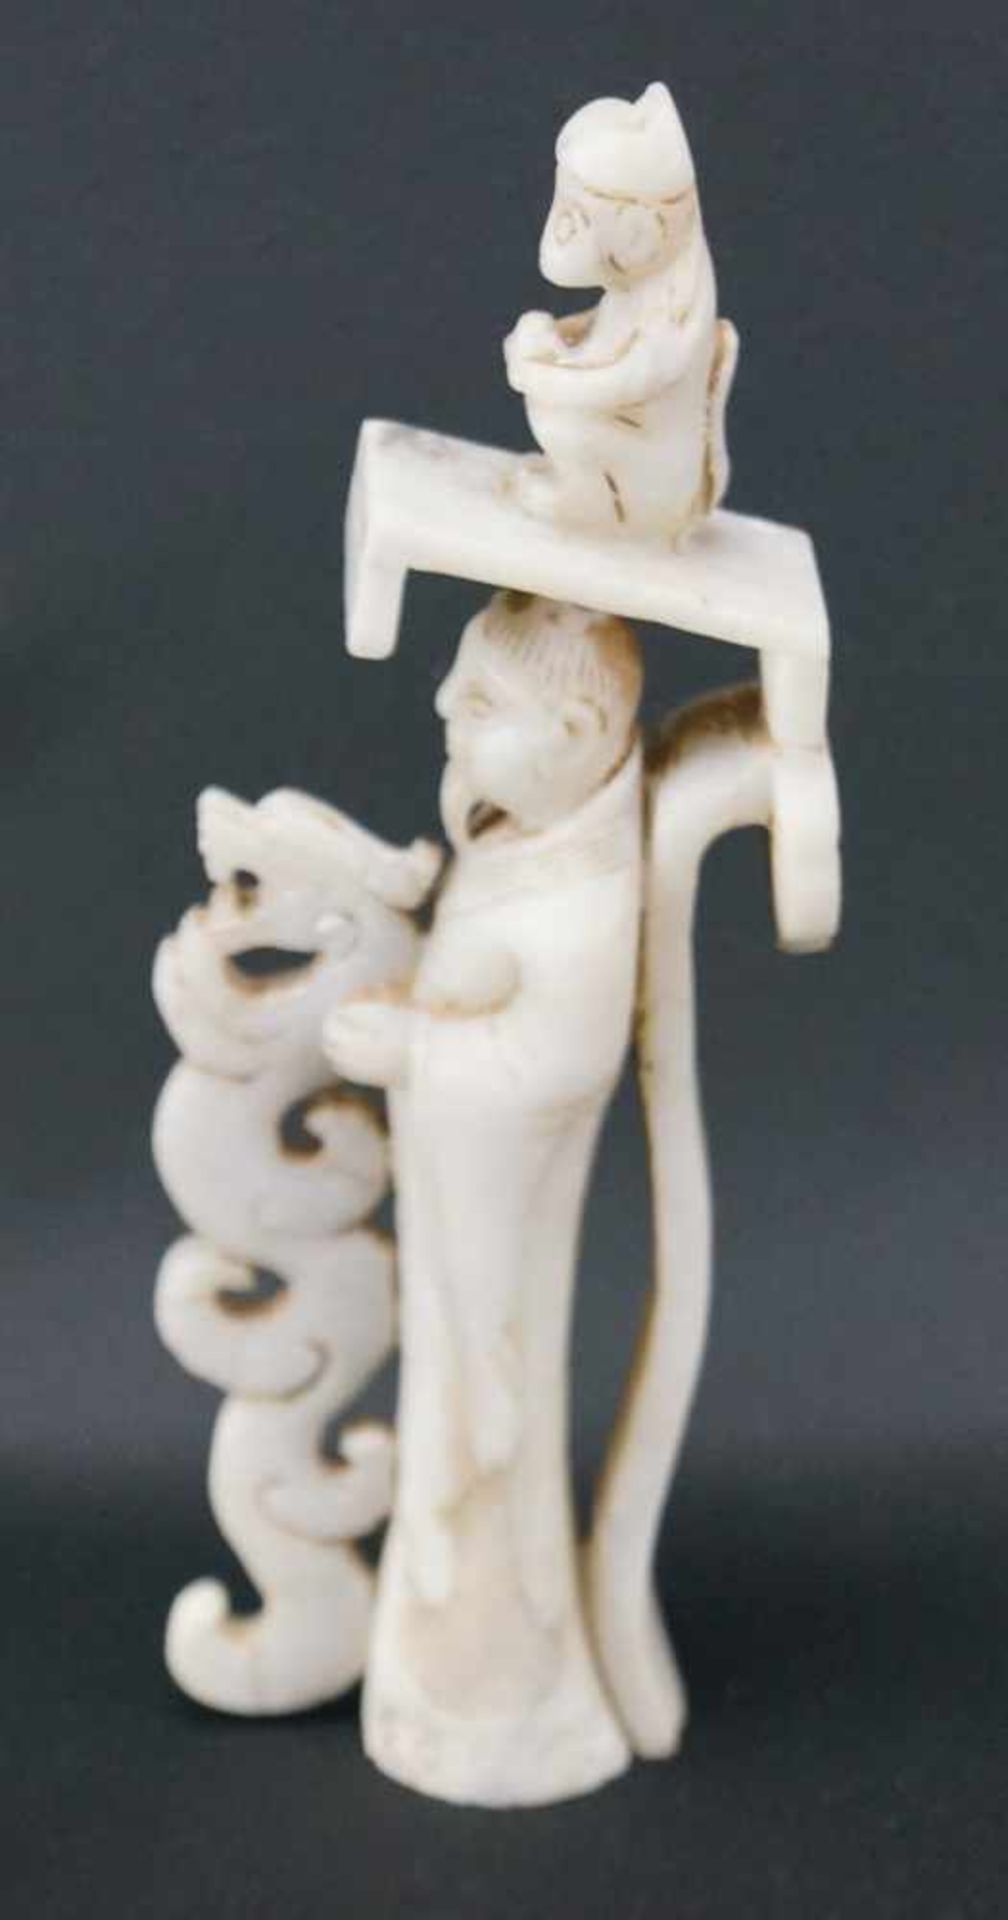 JadefigurWeiße Jade, Darstellung eines Weisen mit Drachen und Affe, Höhe 18 cm x Breite 7 cm, in - Bild 3 aus 10